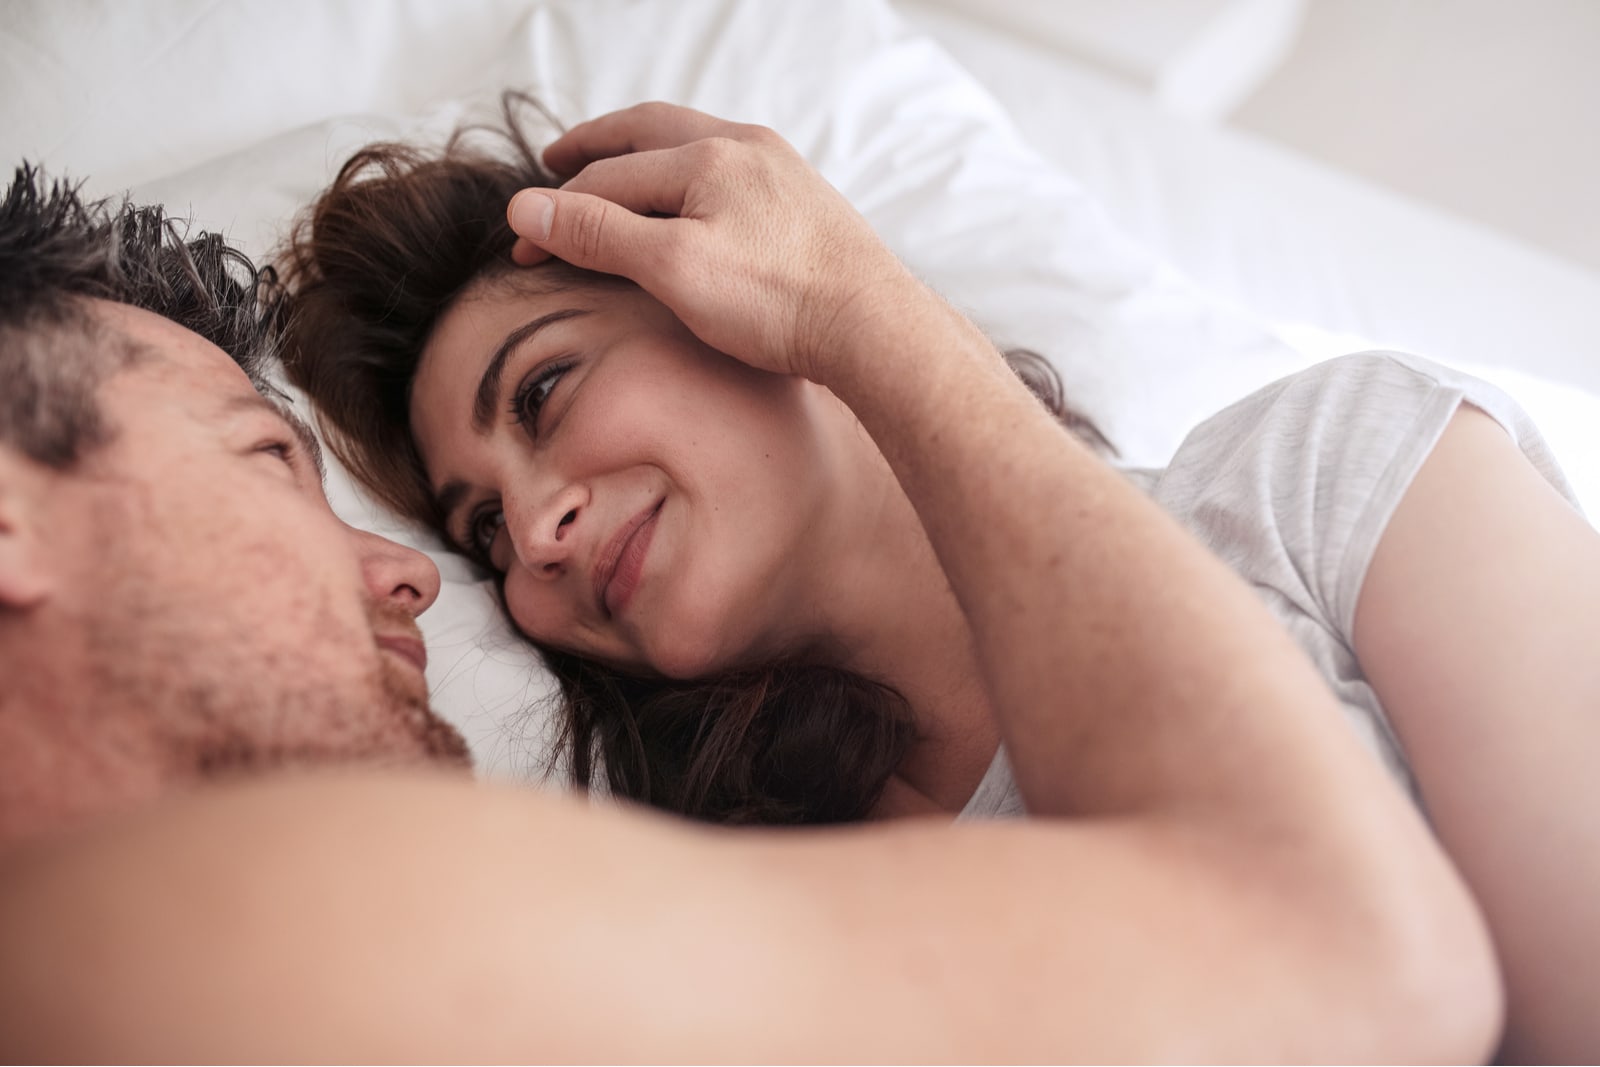 Симпатичная женушка перед сном занимается любовью с мужем